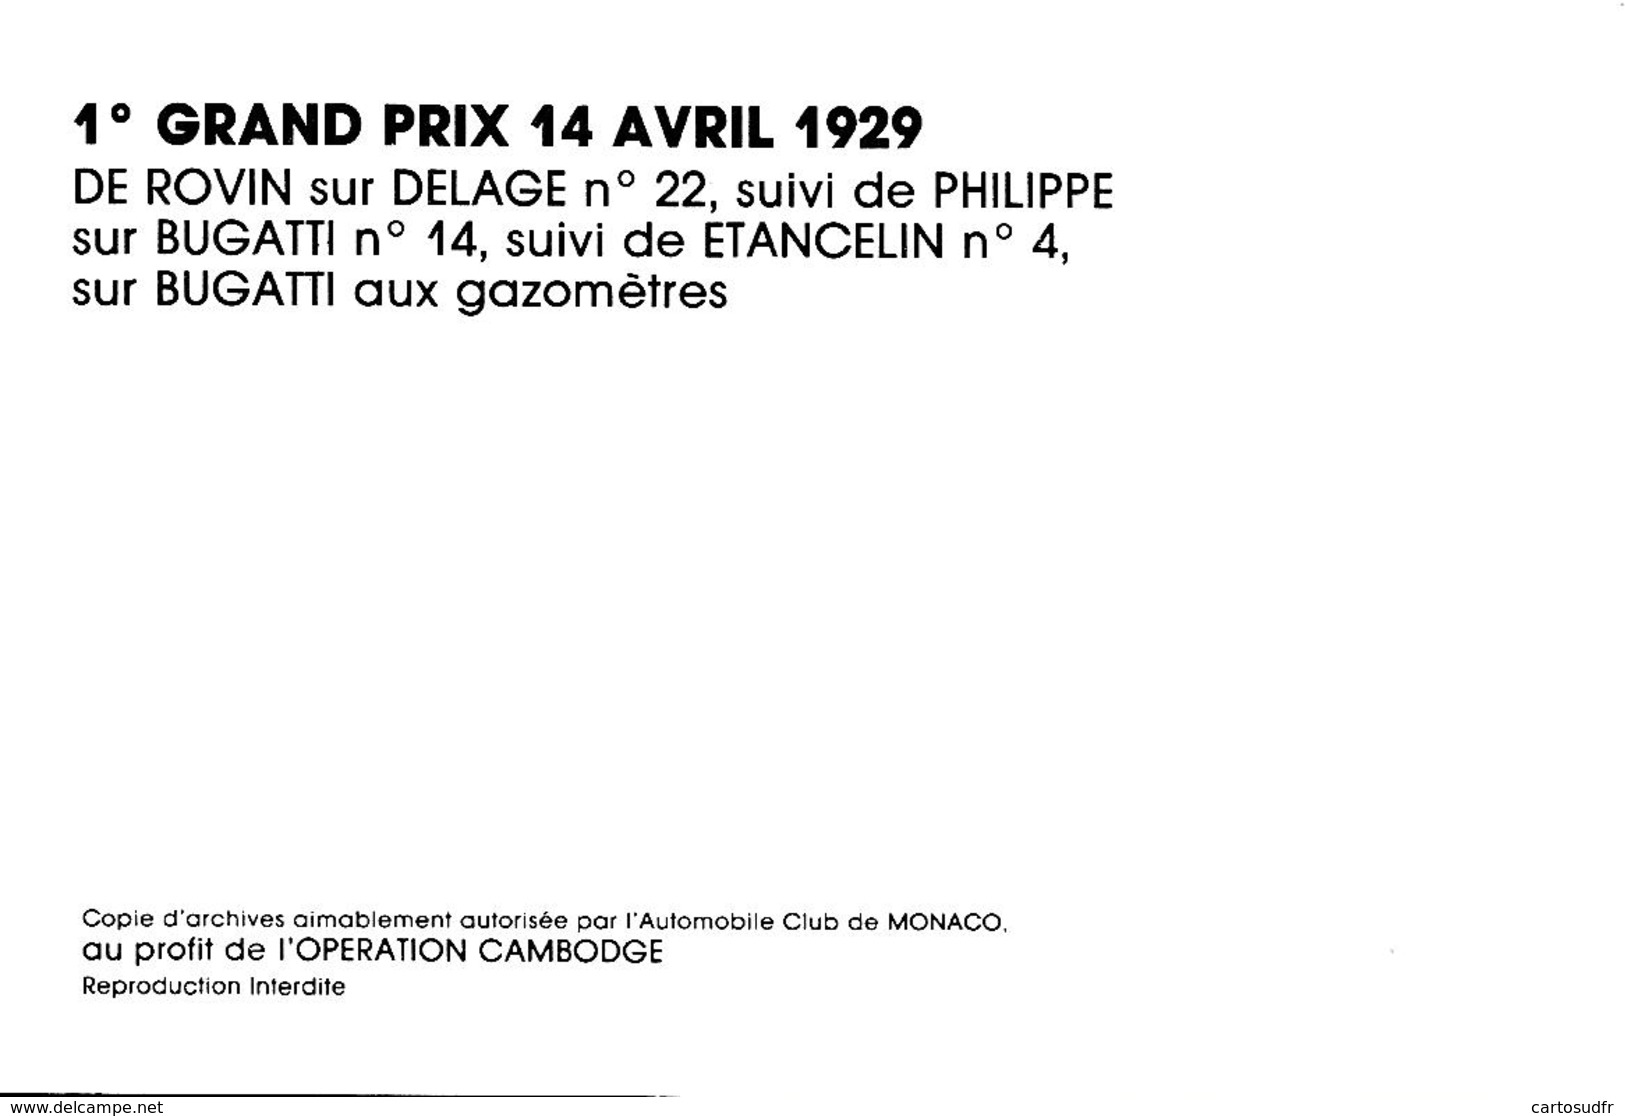 MONACO - 1° GRAND PRIX 14 AVRIL 1929 - 2 PHOTOS RECTO-VERSO SCANNEES - - Grand Prix / F1